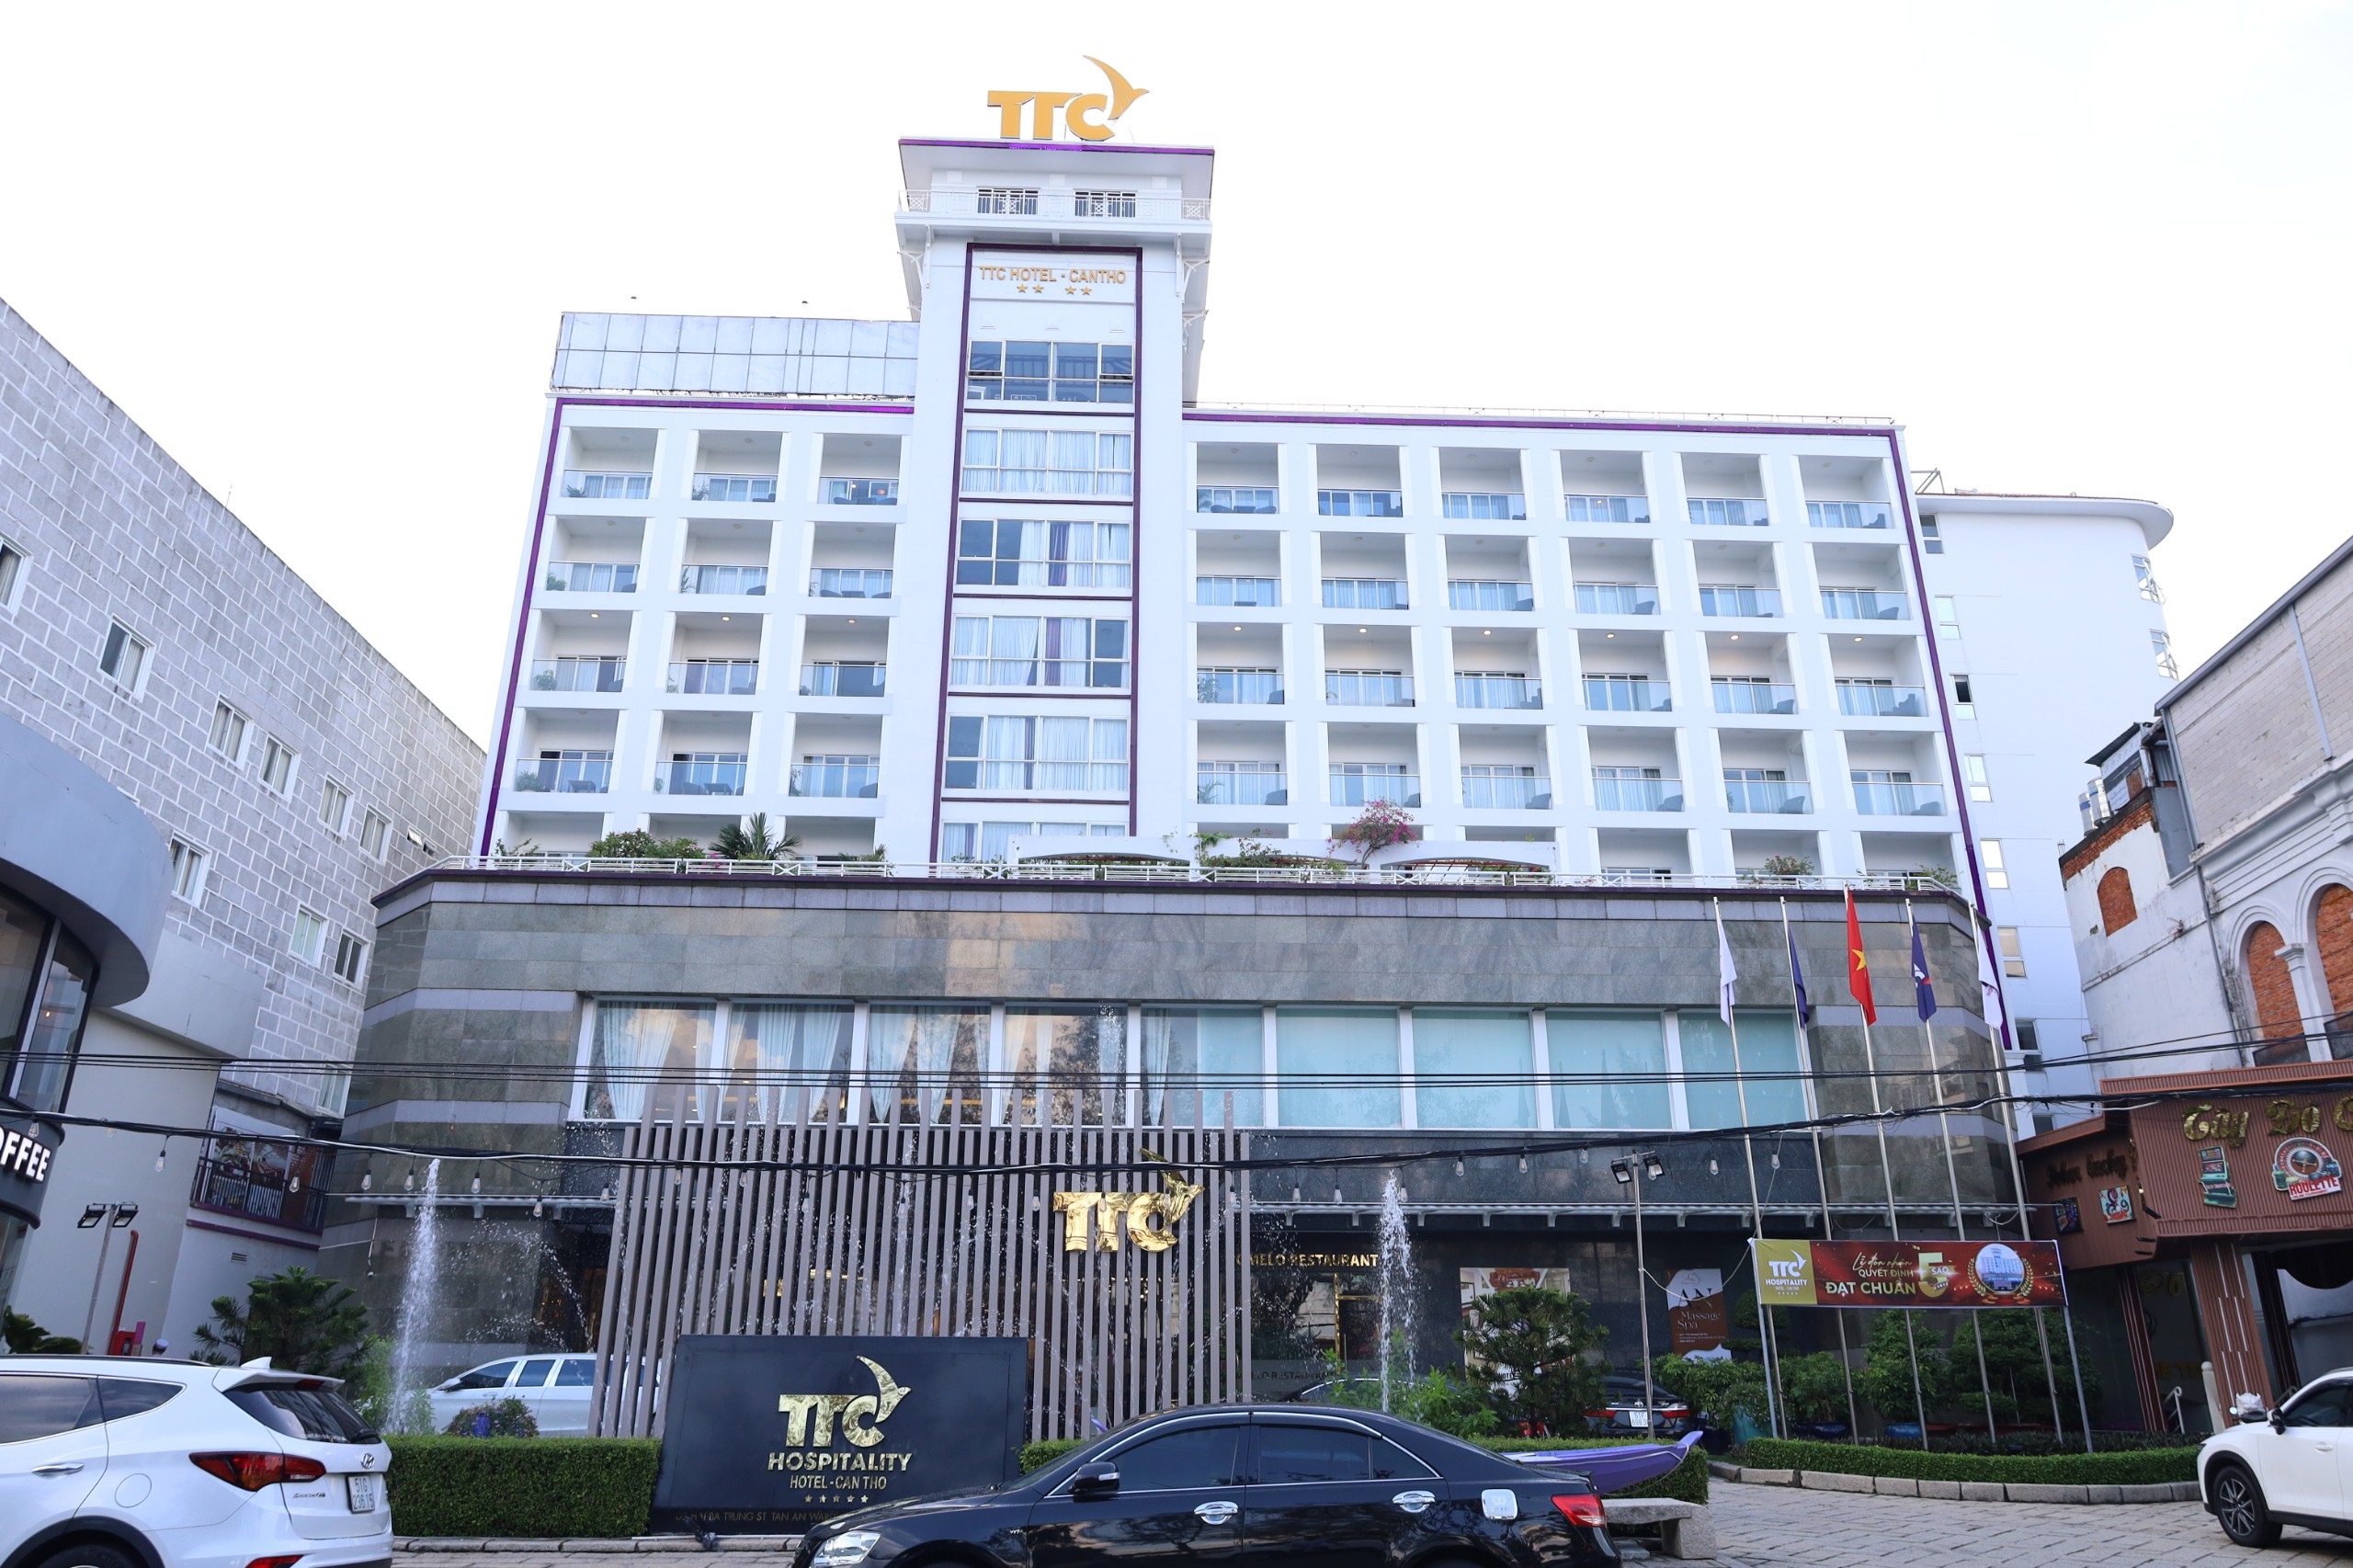 TTC Hotel - Cần Thơ, cơ sở lưu trú trực thuộc Công ty Cổ phần Du lịch Thành Thành Công (TTC Hospitality; thành viên Tập đoàn TTC) được công nhận khách sạn đạt chuẩn 5 sao từ Tổng cục Du lịch Việt Nam.